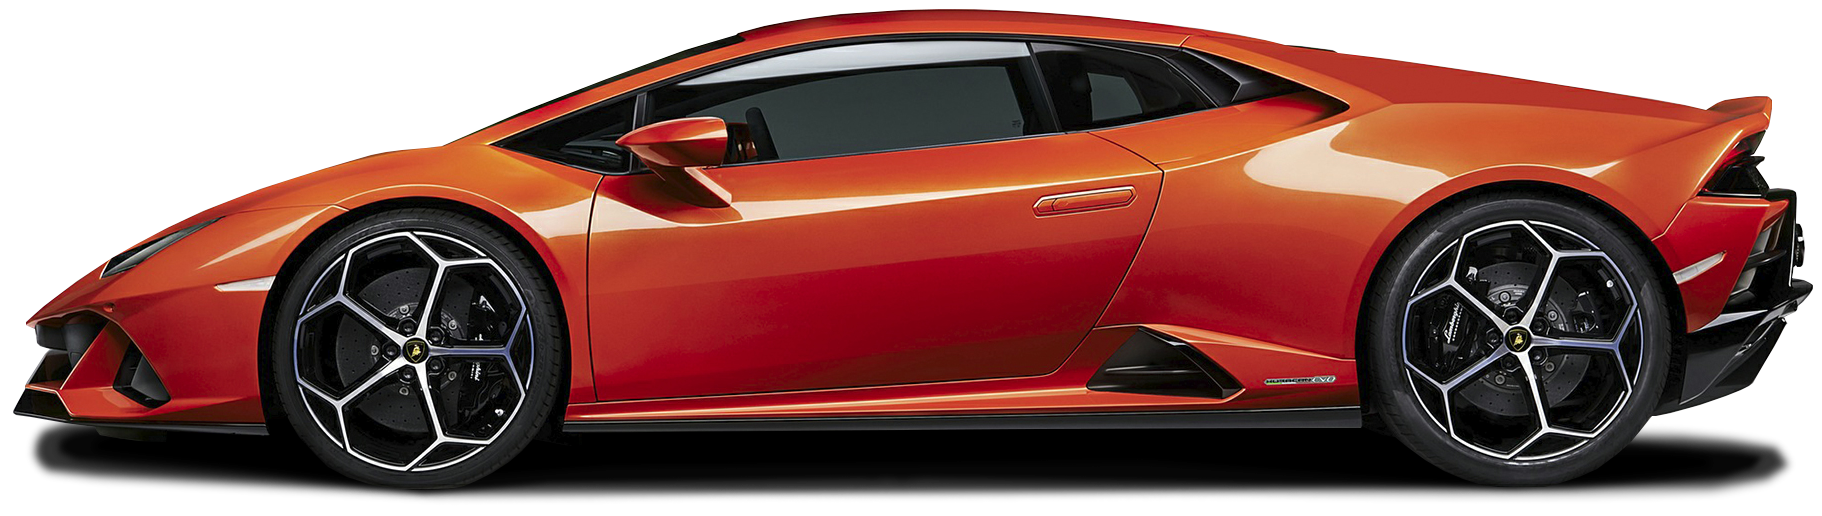 2021 Lamborghini Huracan EVO Coupe 